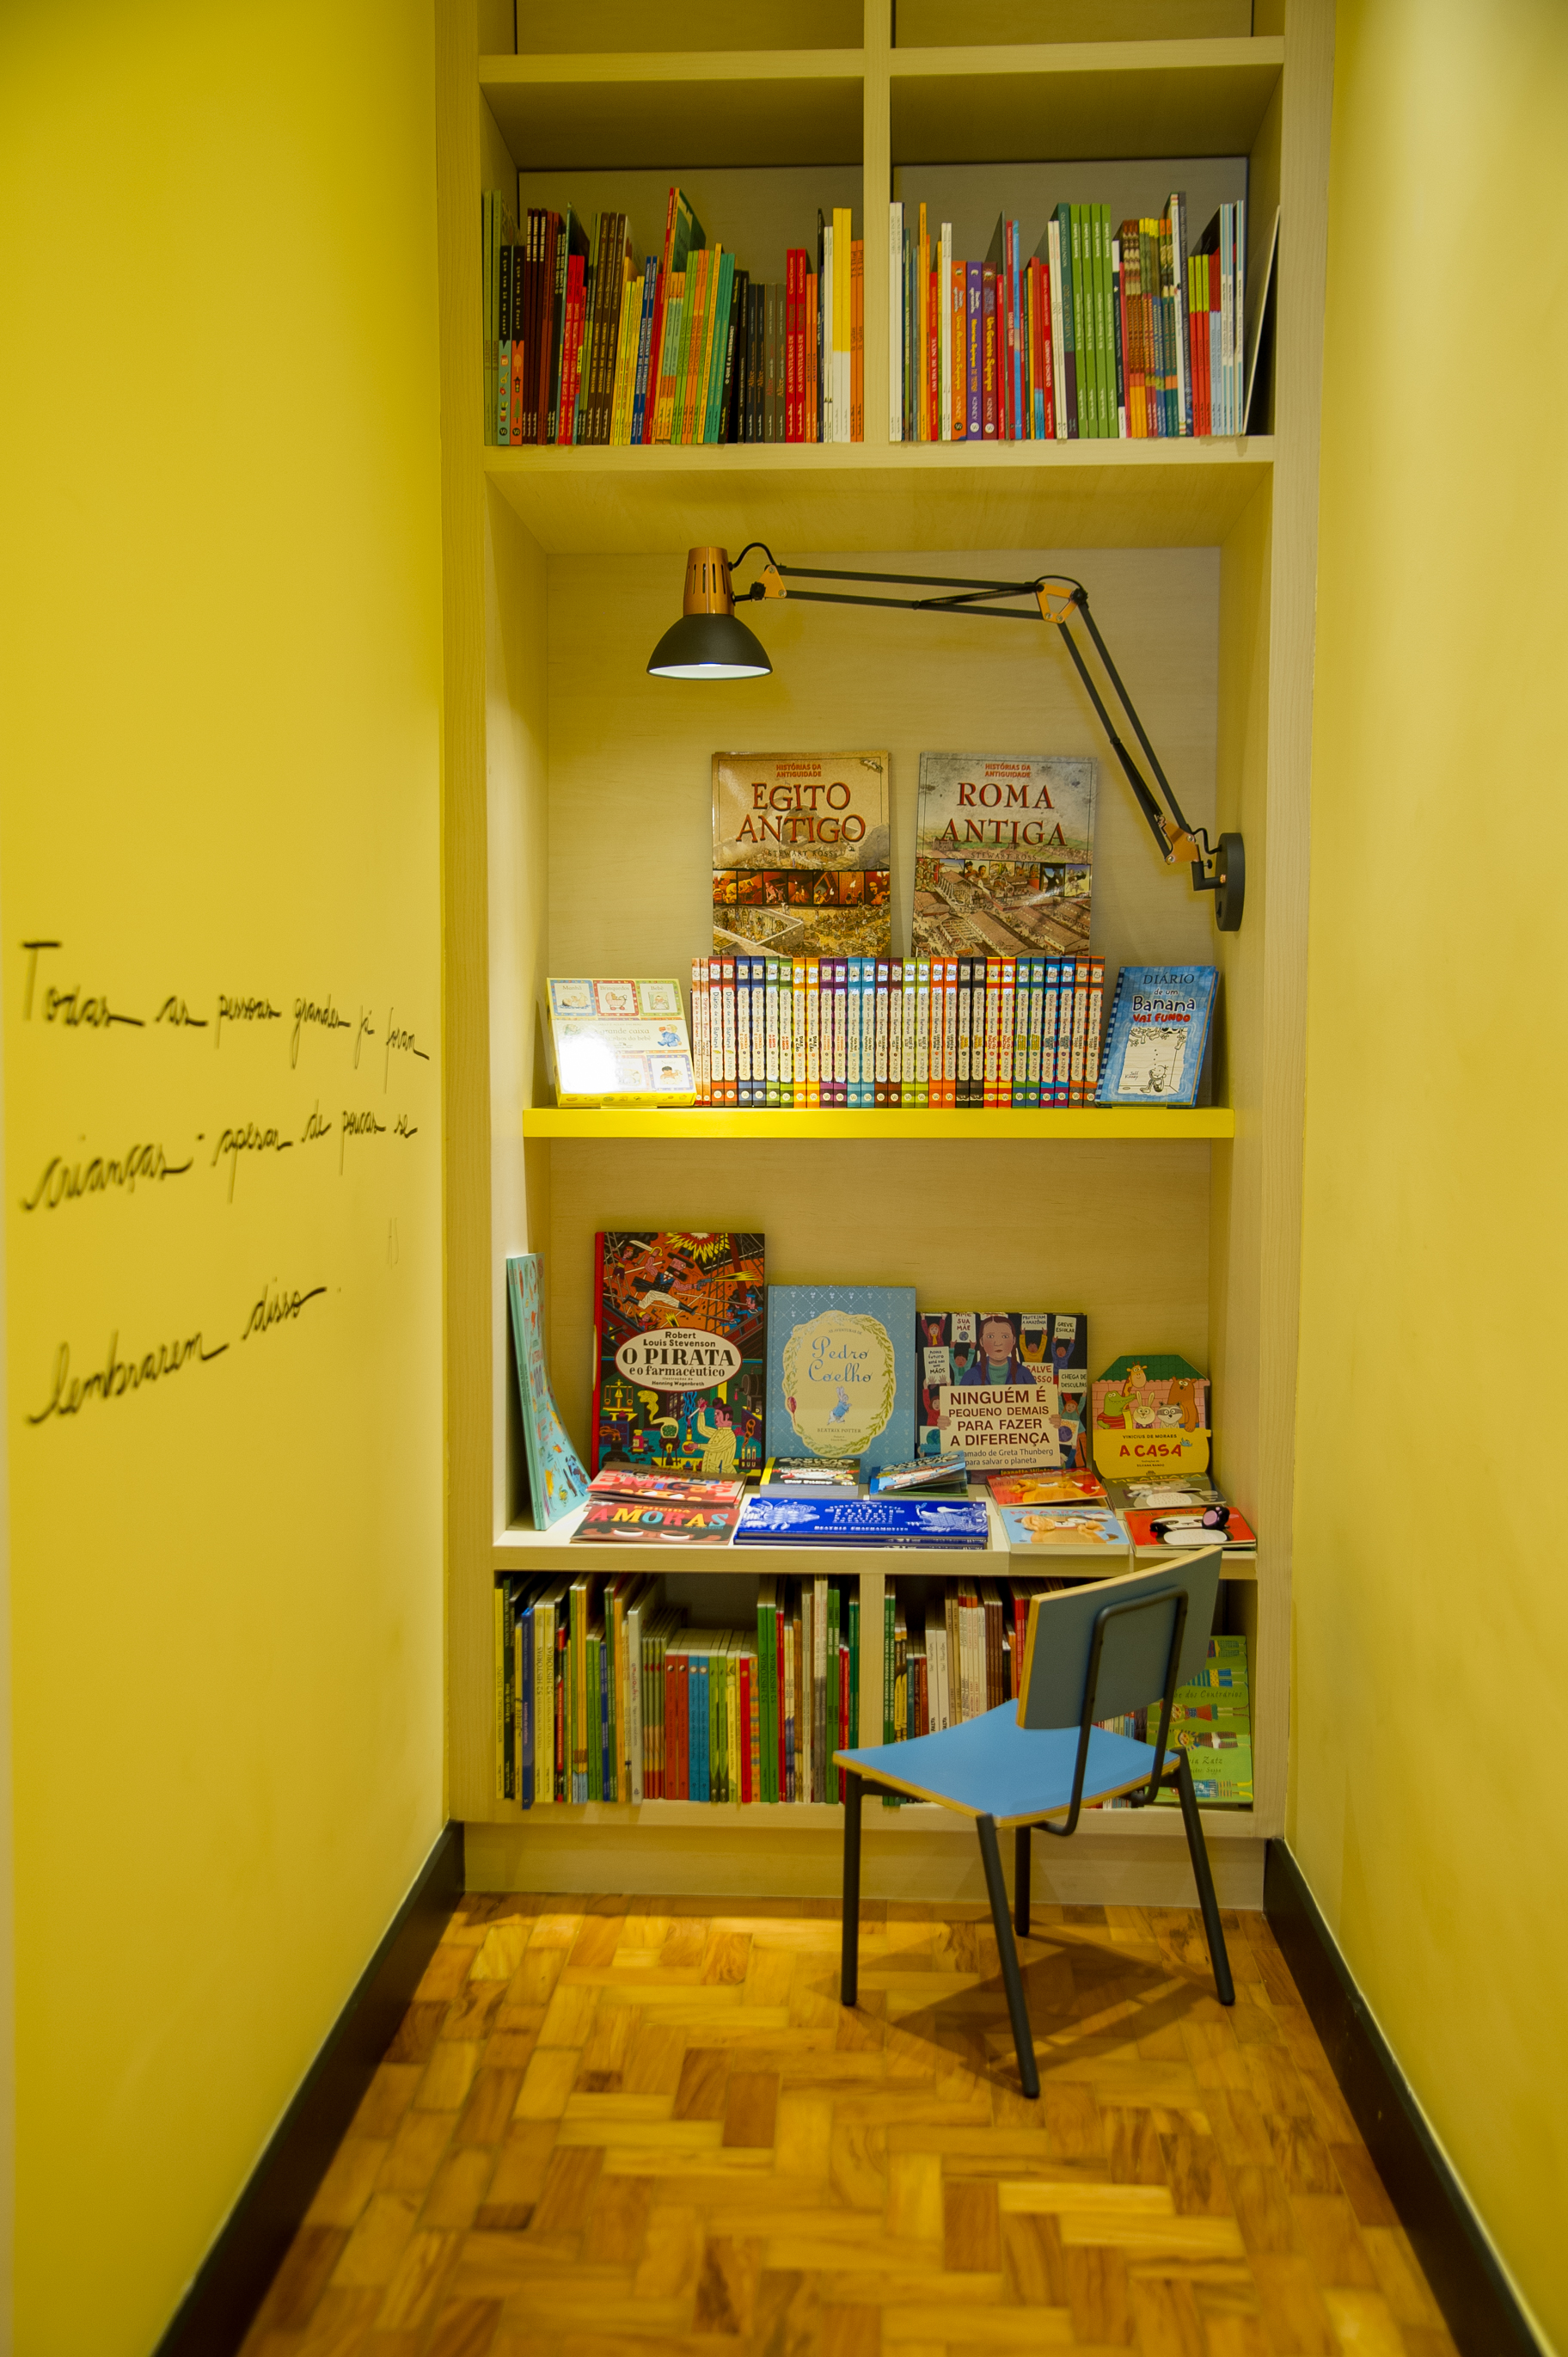 Pequeno vão reúne uma cadeira infantil e livros coloridos no fundo.